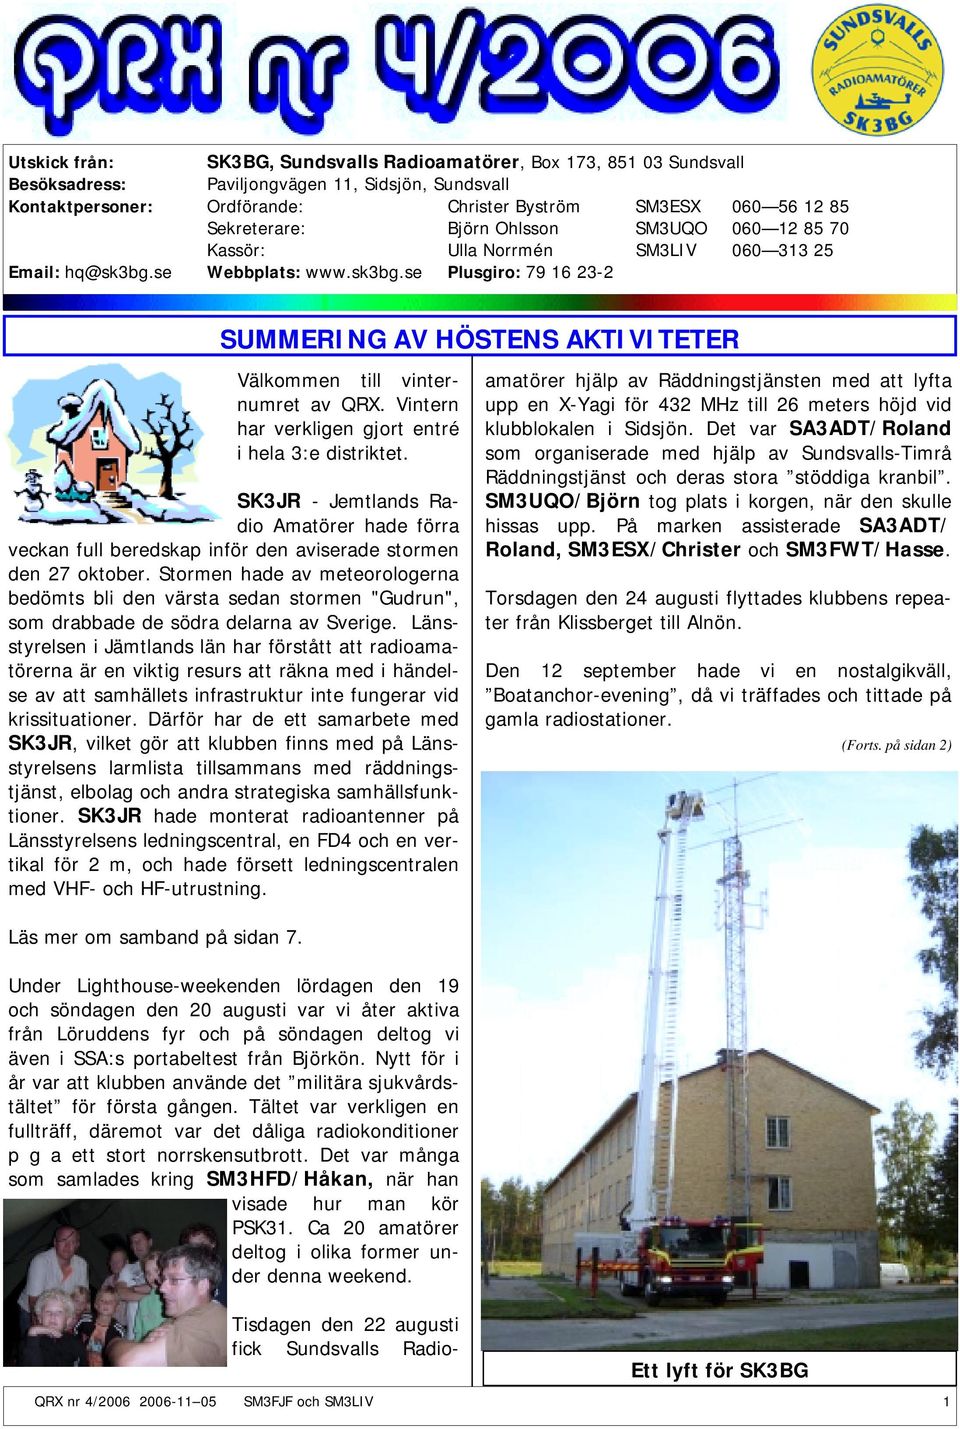 Vintern har verkligen gjort entré i hela 3:e distriktet. SK3JR - Jemtlands Radio Amatörer hade förra veckan full beredskap inför den aviserade stormen den 27 oktober.